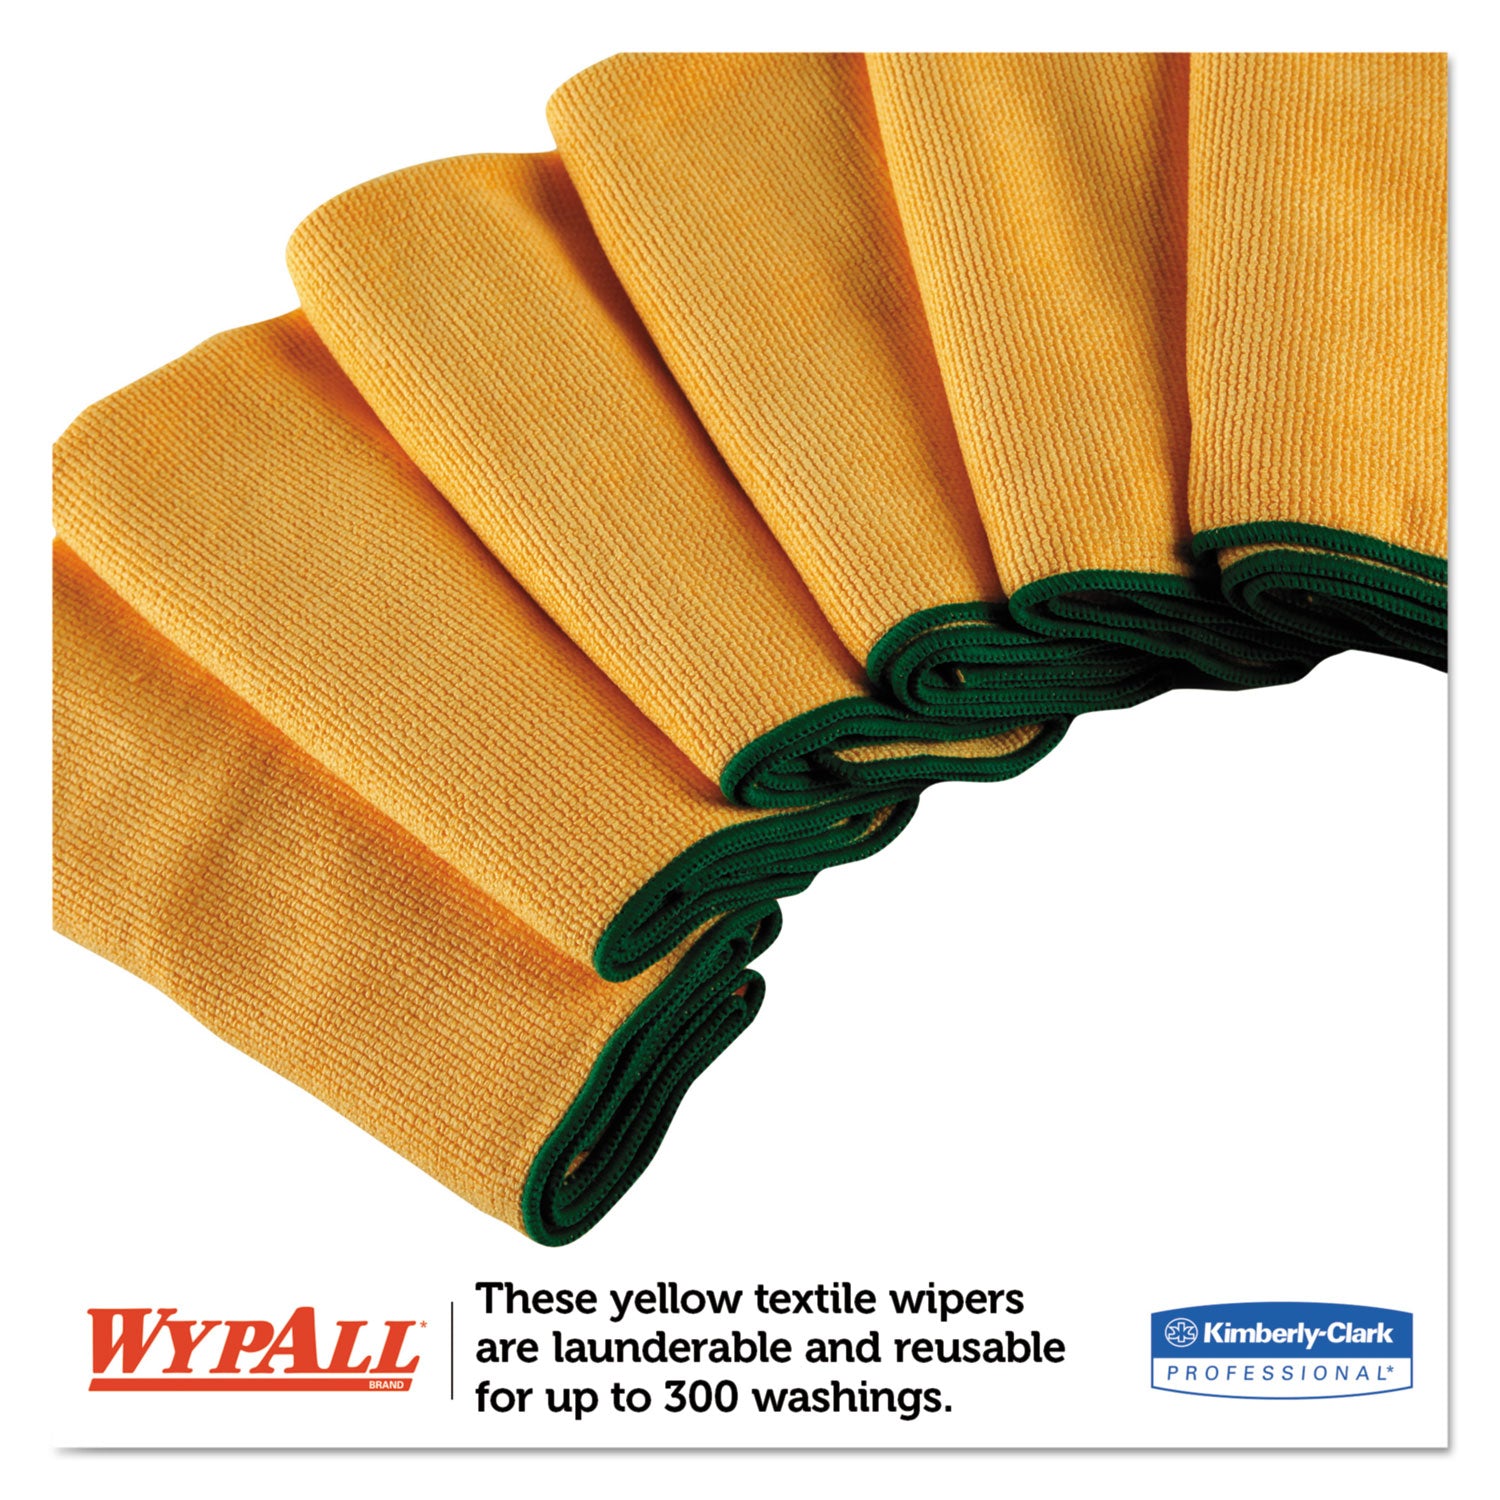 Microfiber Cloths, Reusable, 15.75 x 15.75, Yellow, 24/Carton - 